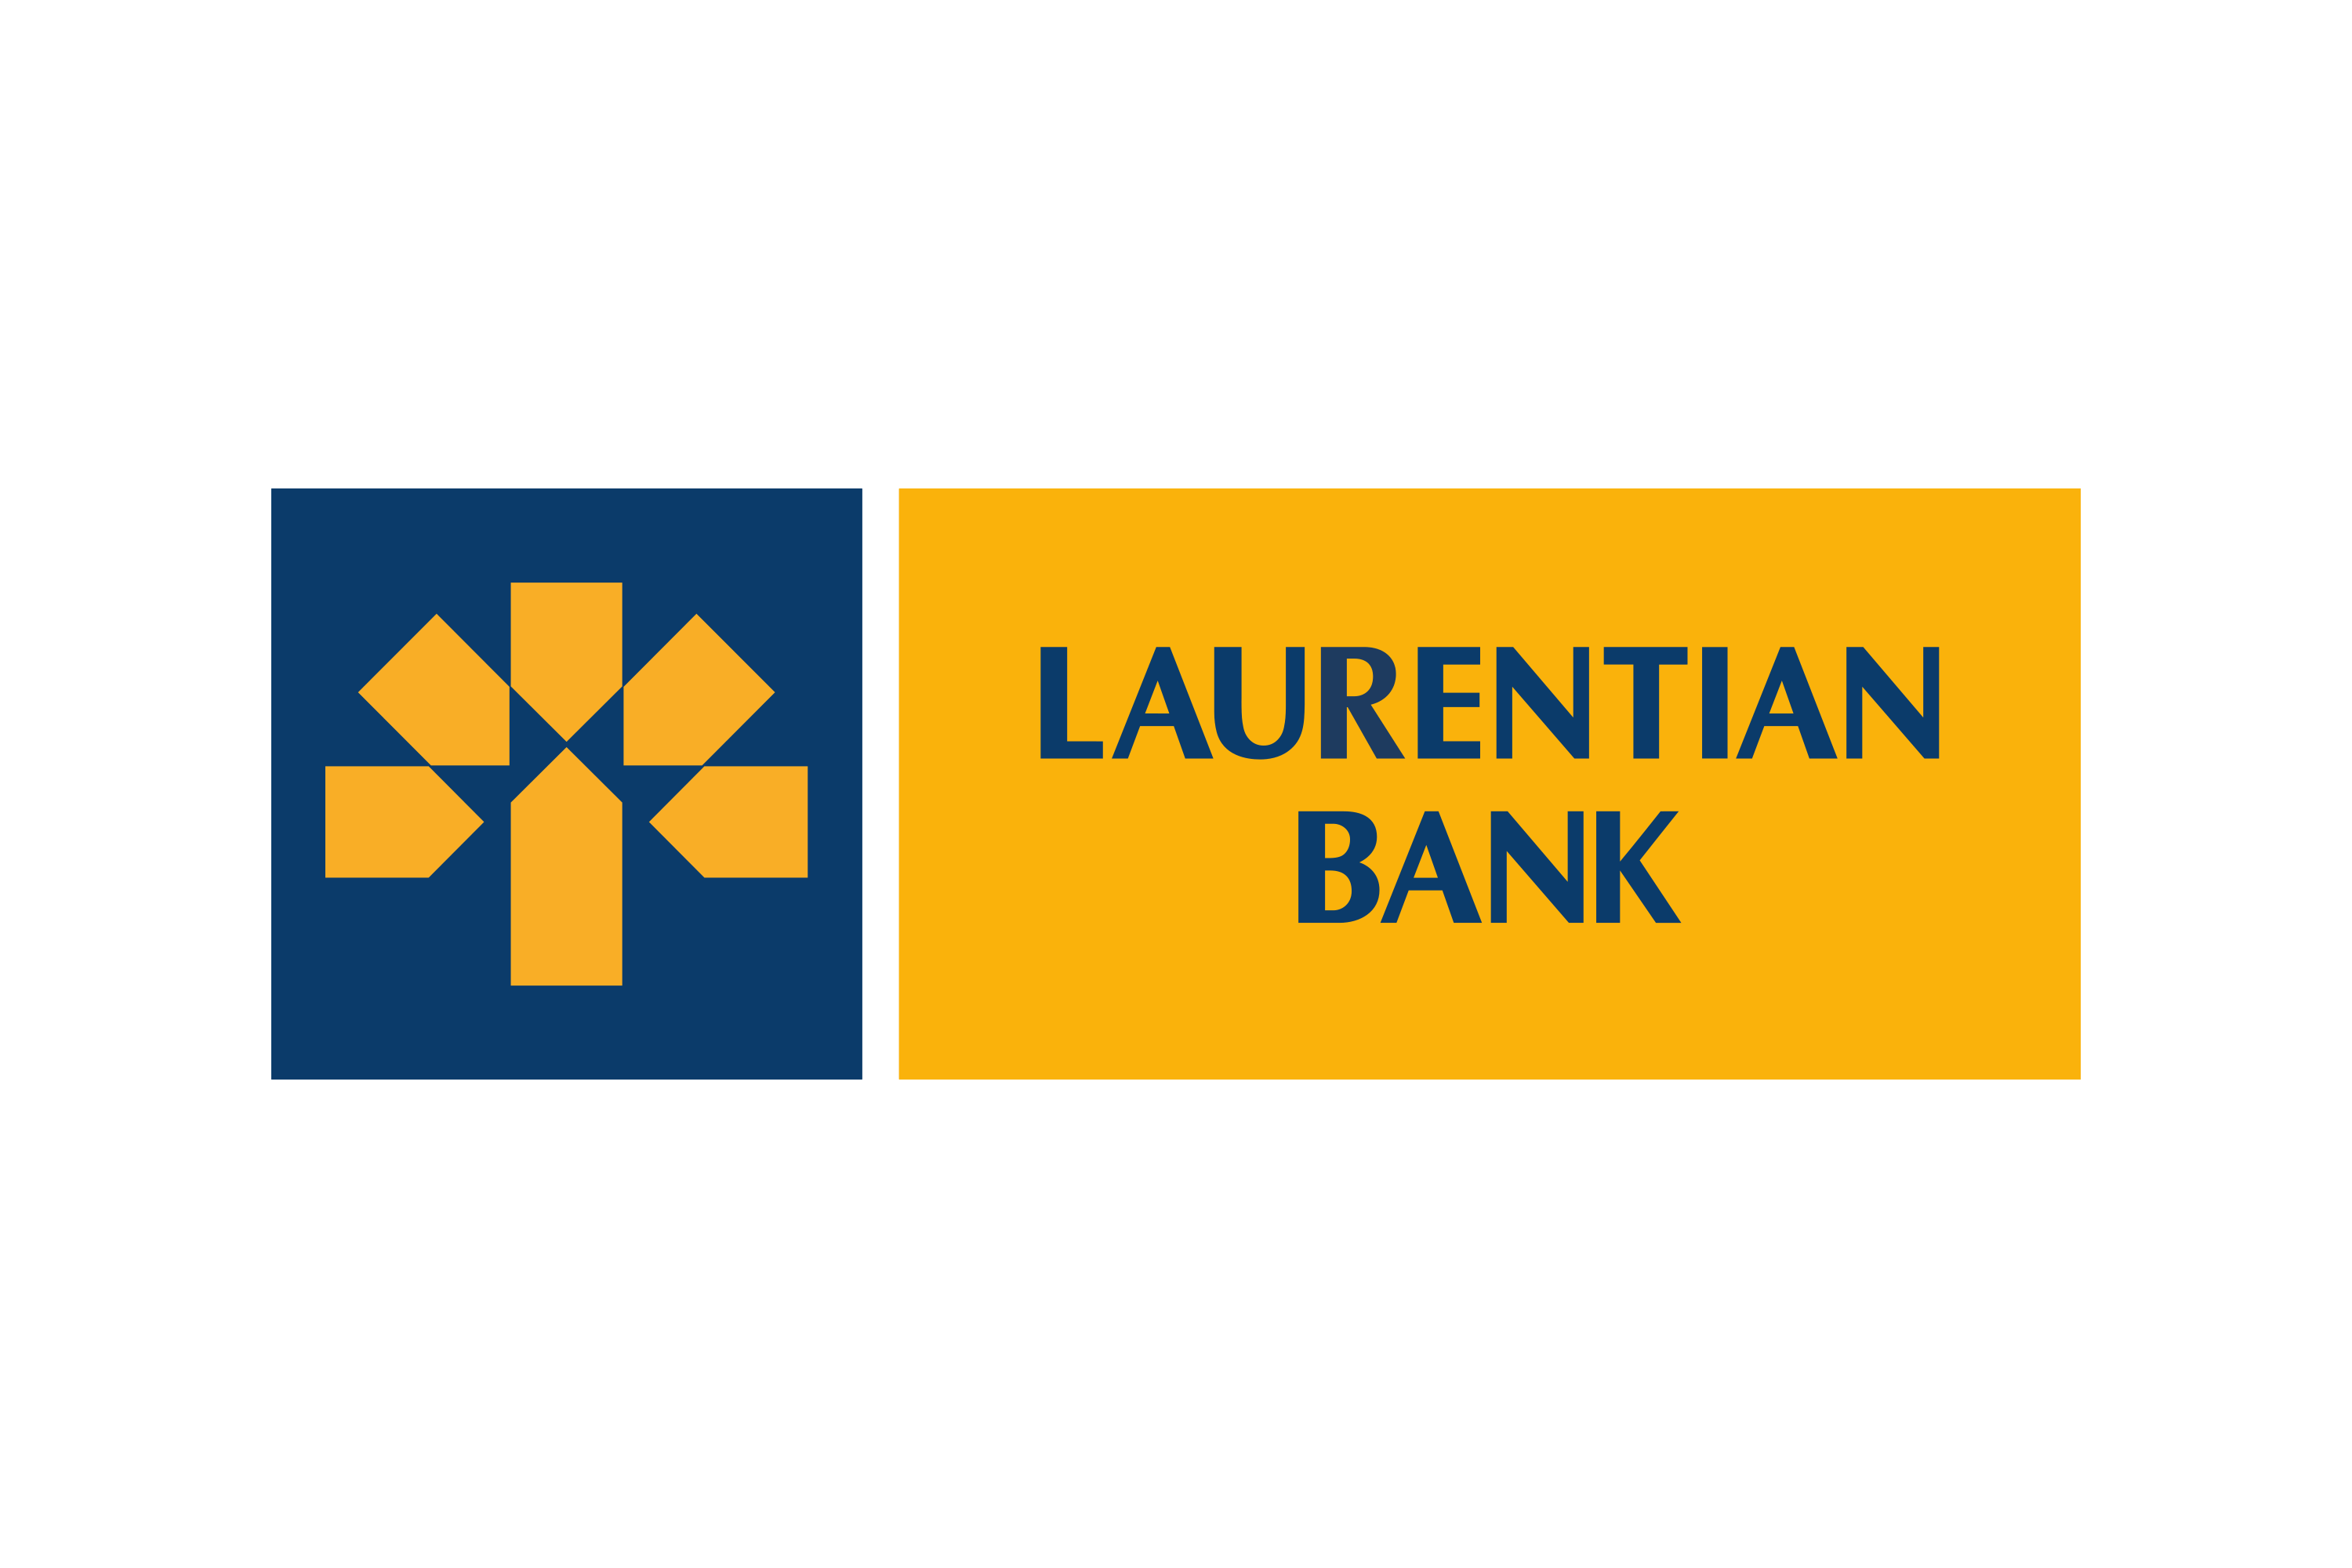 Laurentian bank logo